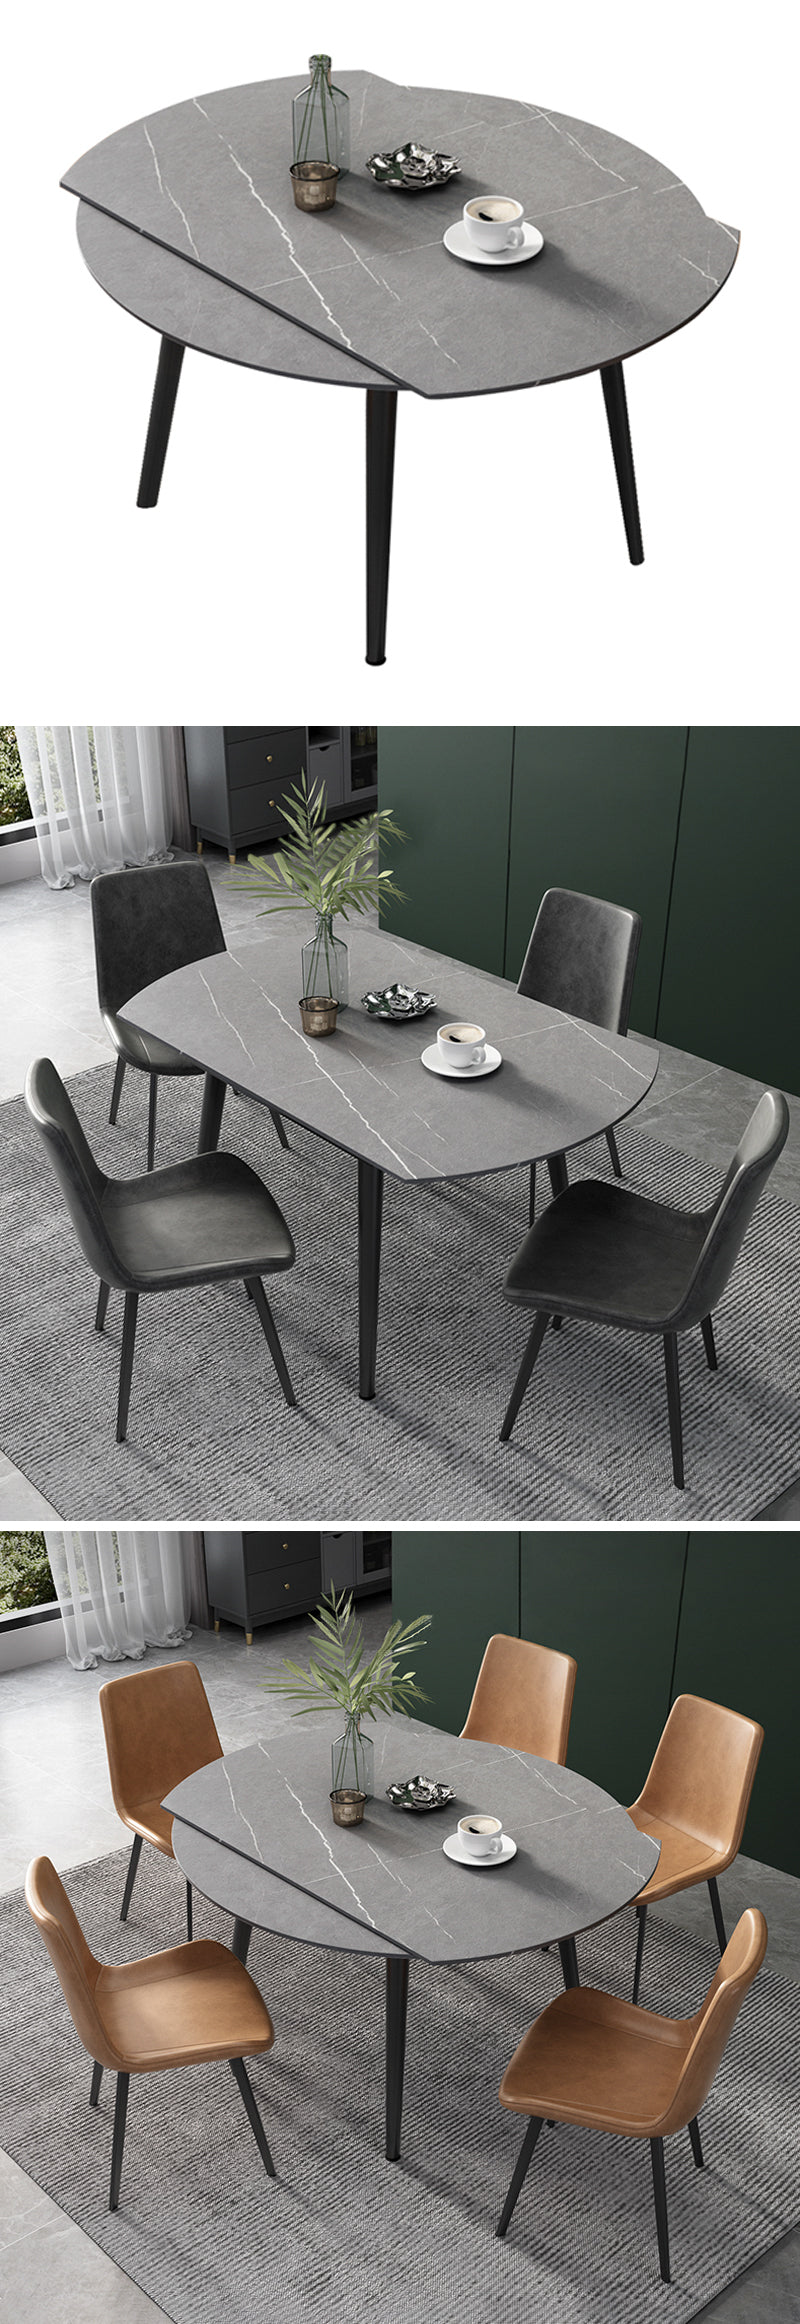 【ダイニングテーブル】北欧  伸縮式 選べる4色 ダイニングテーブル 椅子セット ※伸縮機能が叶え、使用シーンやお部屋のレイアウトに合わせて形を選べます。